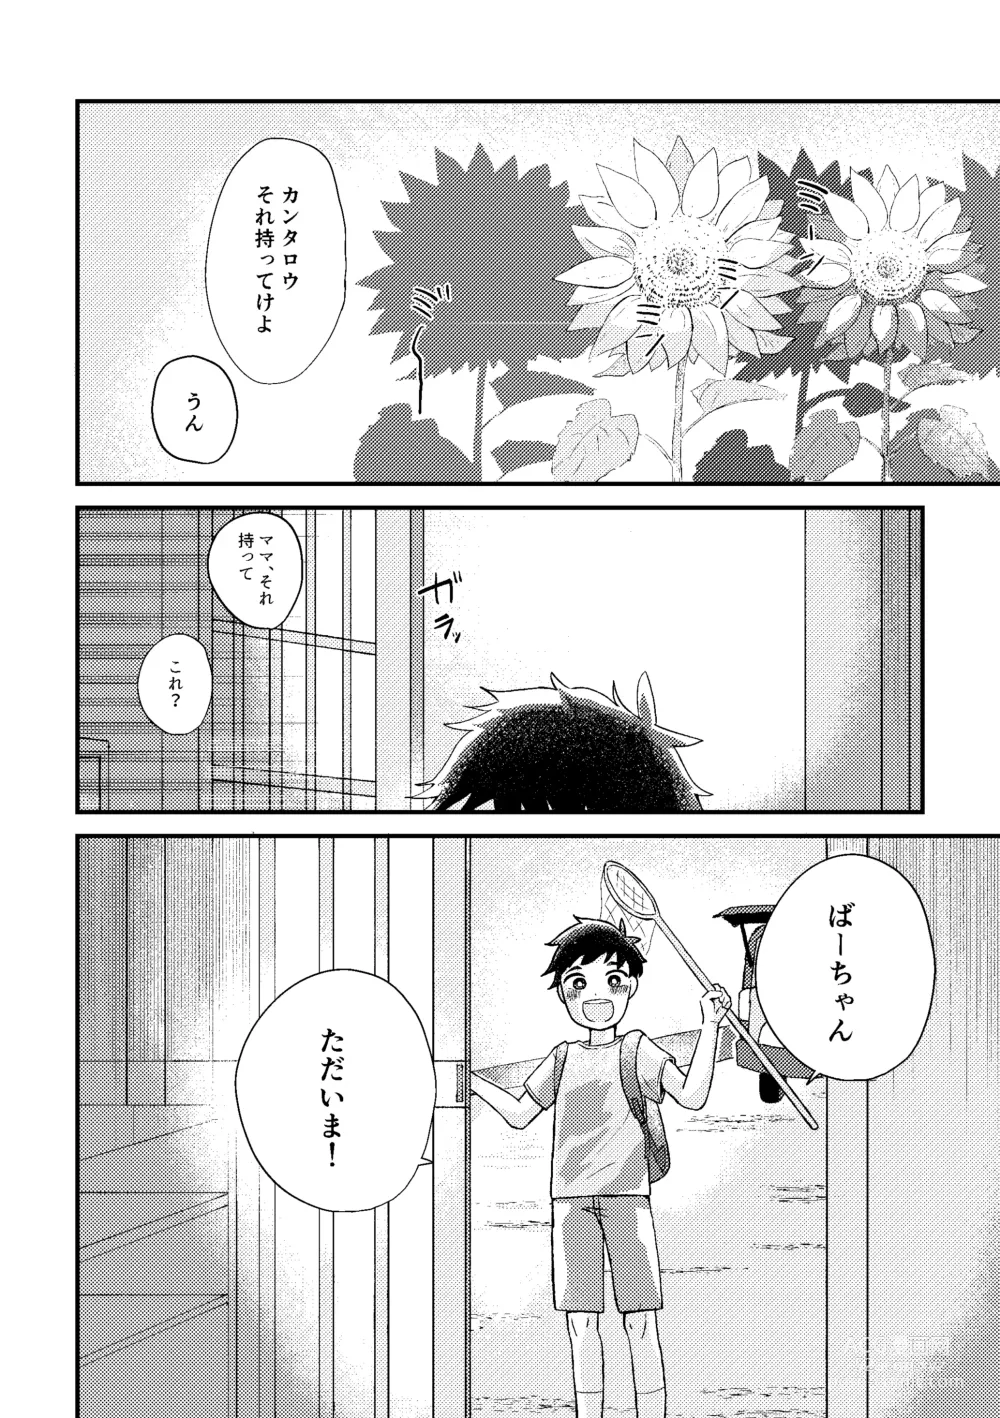 Page 3 of doujinshi Saigo no Natsuyasumi